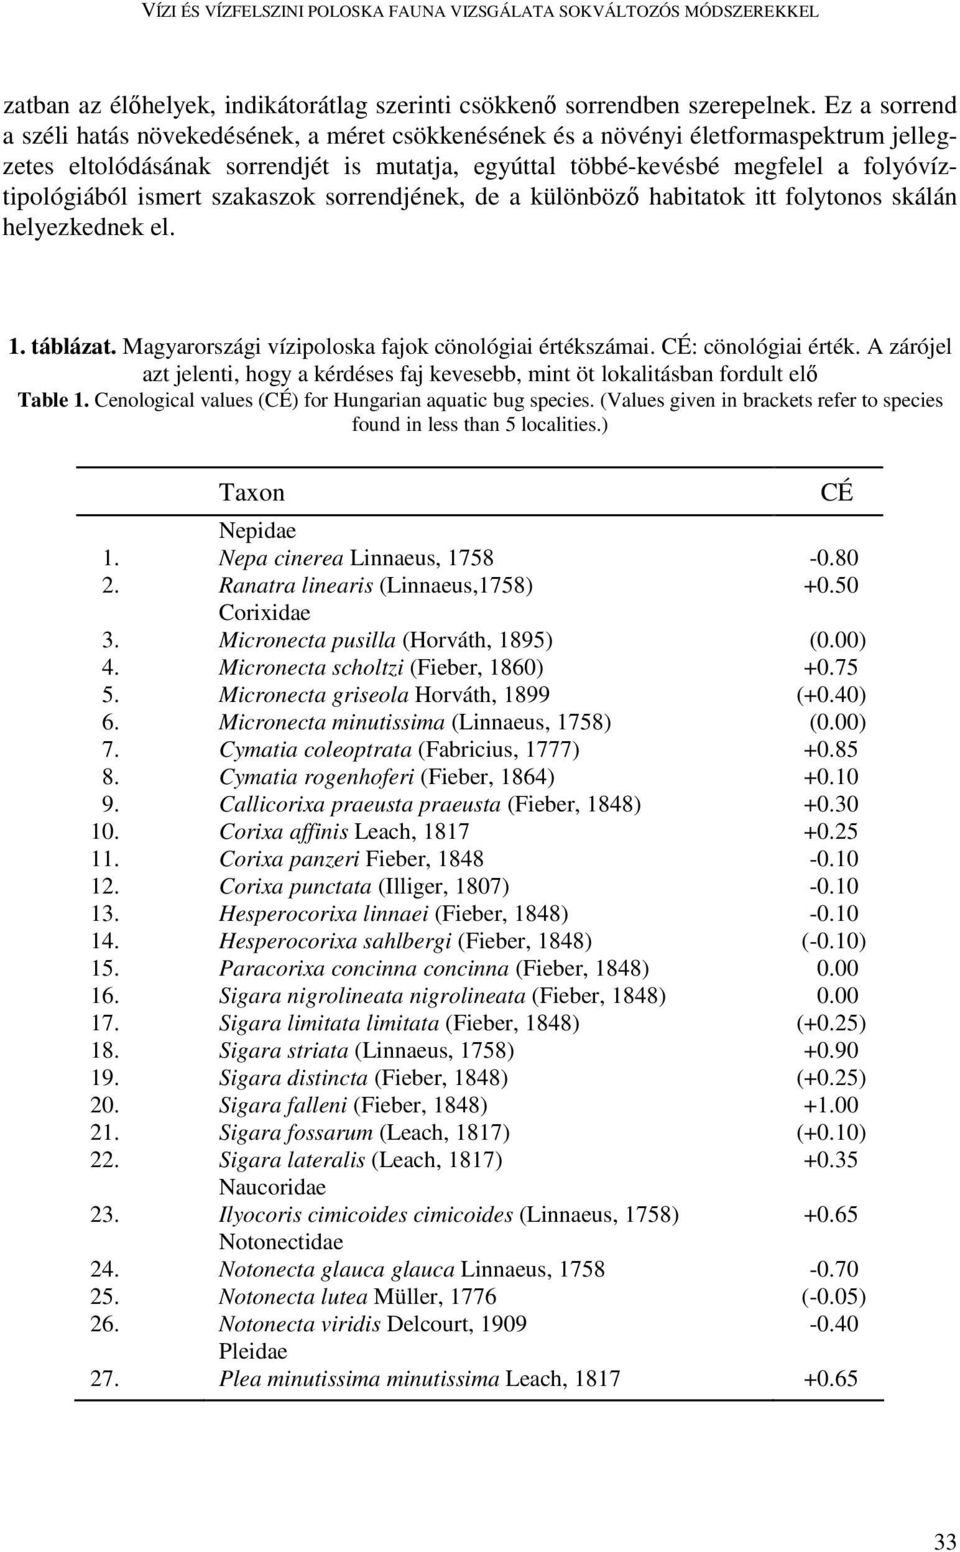 ismert szakaszok sorrendjének, de a különbözı habitatok itt folytonos skálán helyezkednek el. 1. táblázat. Magyarországi vízipoloska fajok cönológiai értékszámai. CÉ: cönológiai érték.